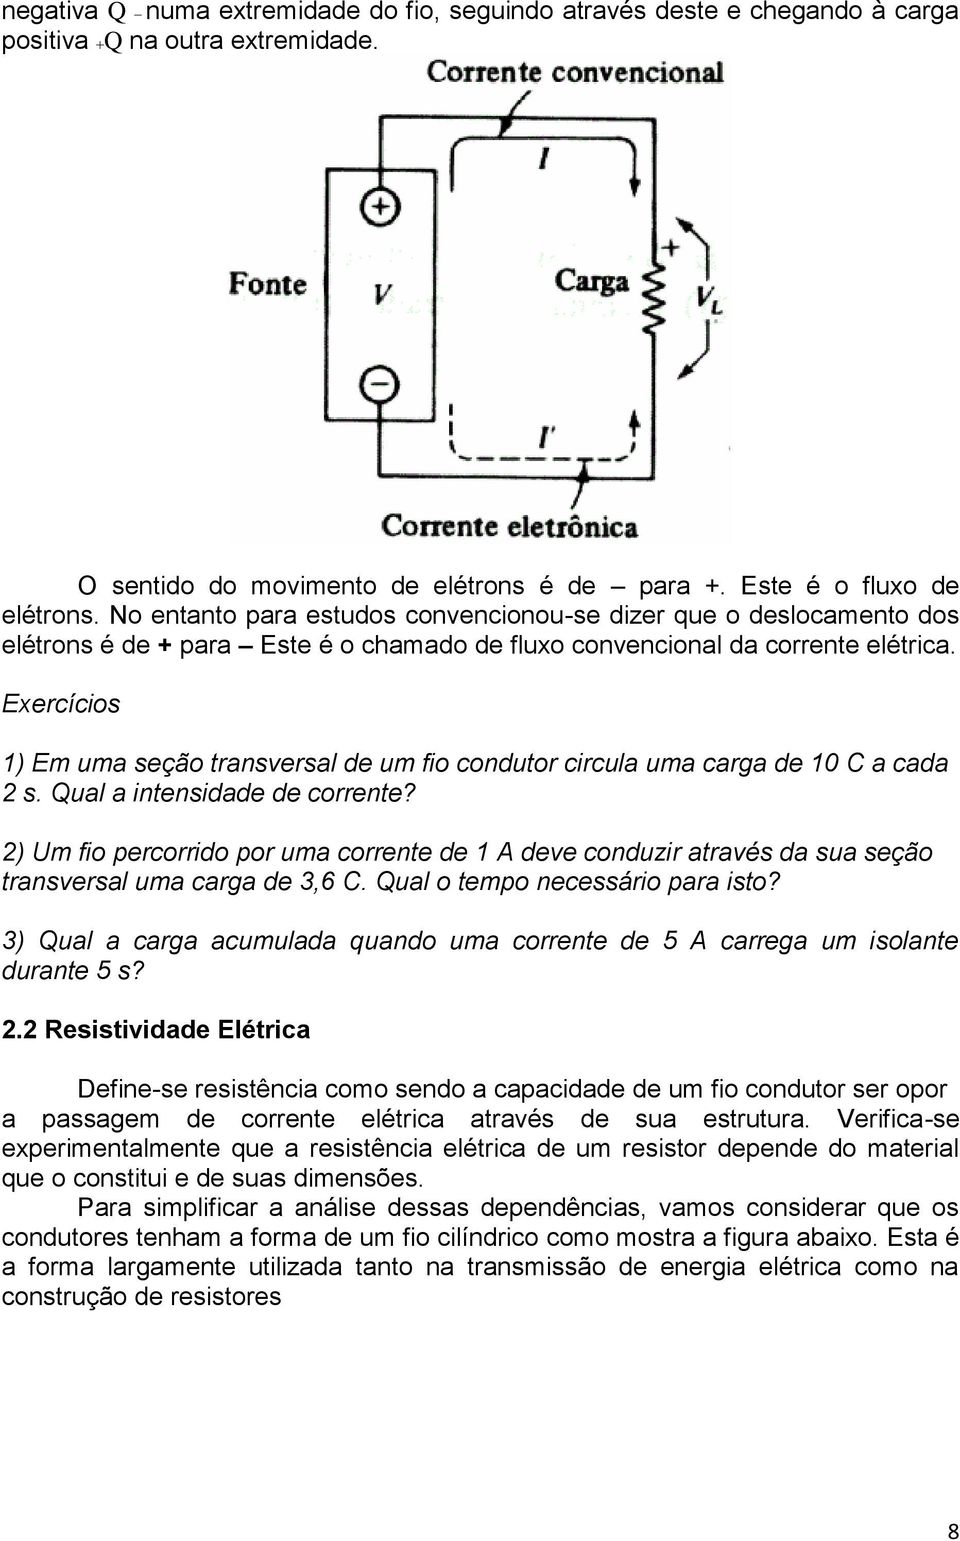 Exercícios 1) Em uma seção transversal de um fio condutor circula uma carga de 10 C a cada 2 s. Qual a intensidade de corrente?